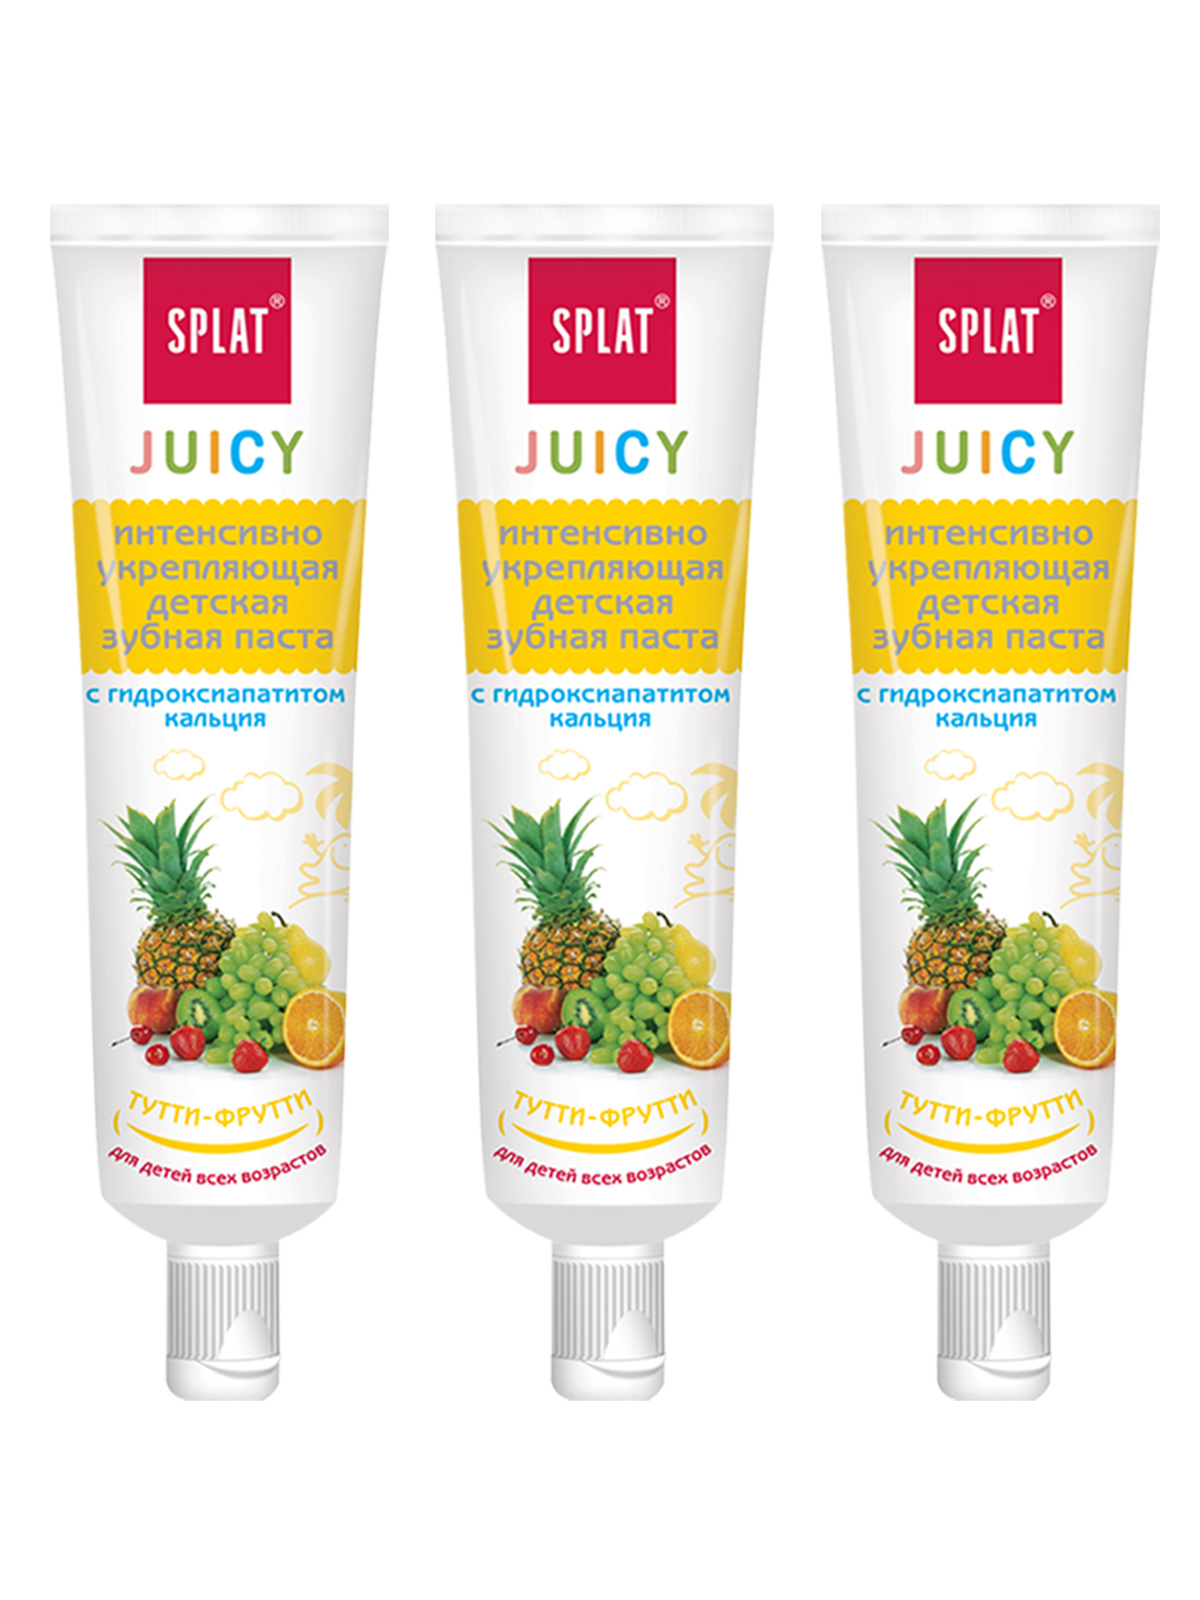 Паста зубная Splat Juicy для детей, тутти-фрутти, 35 мл, 3 шт. зубная паста splat professional likvum gel 80421121